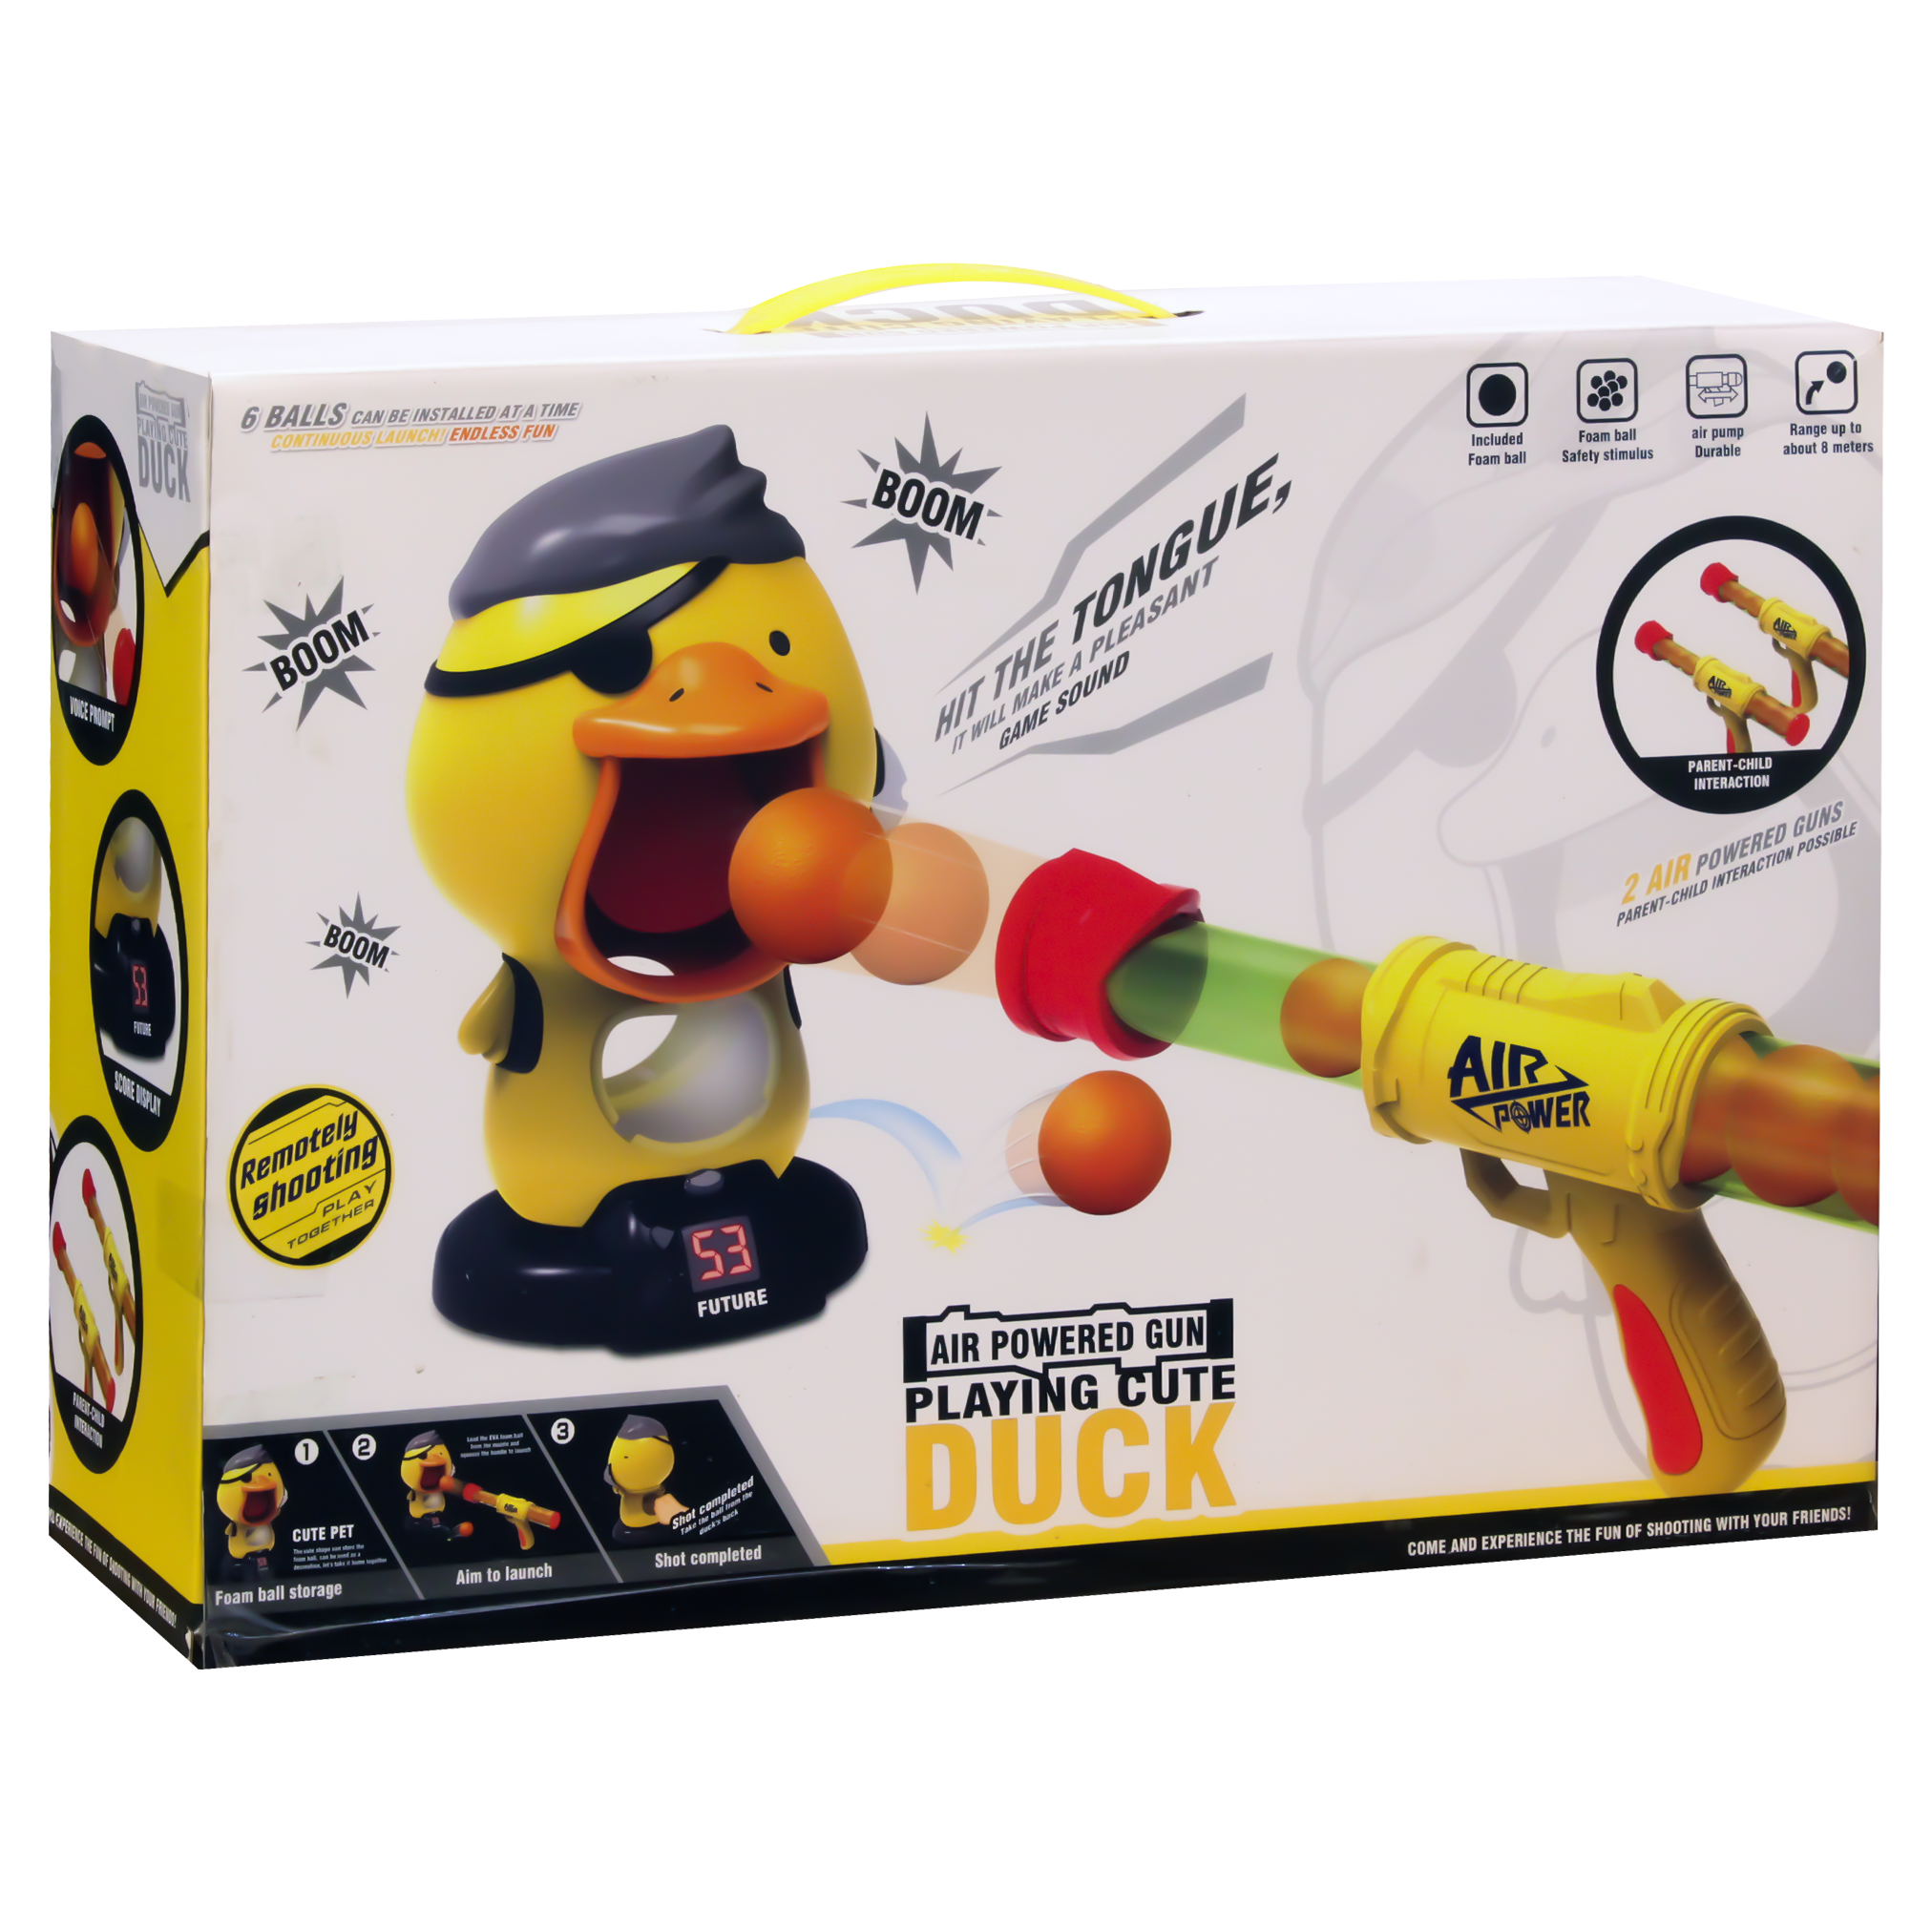 Cute Duck with 2 Air power Guns And foam balls